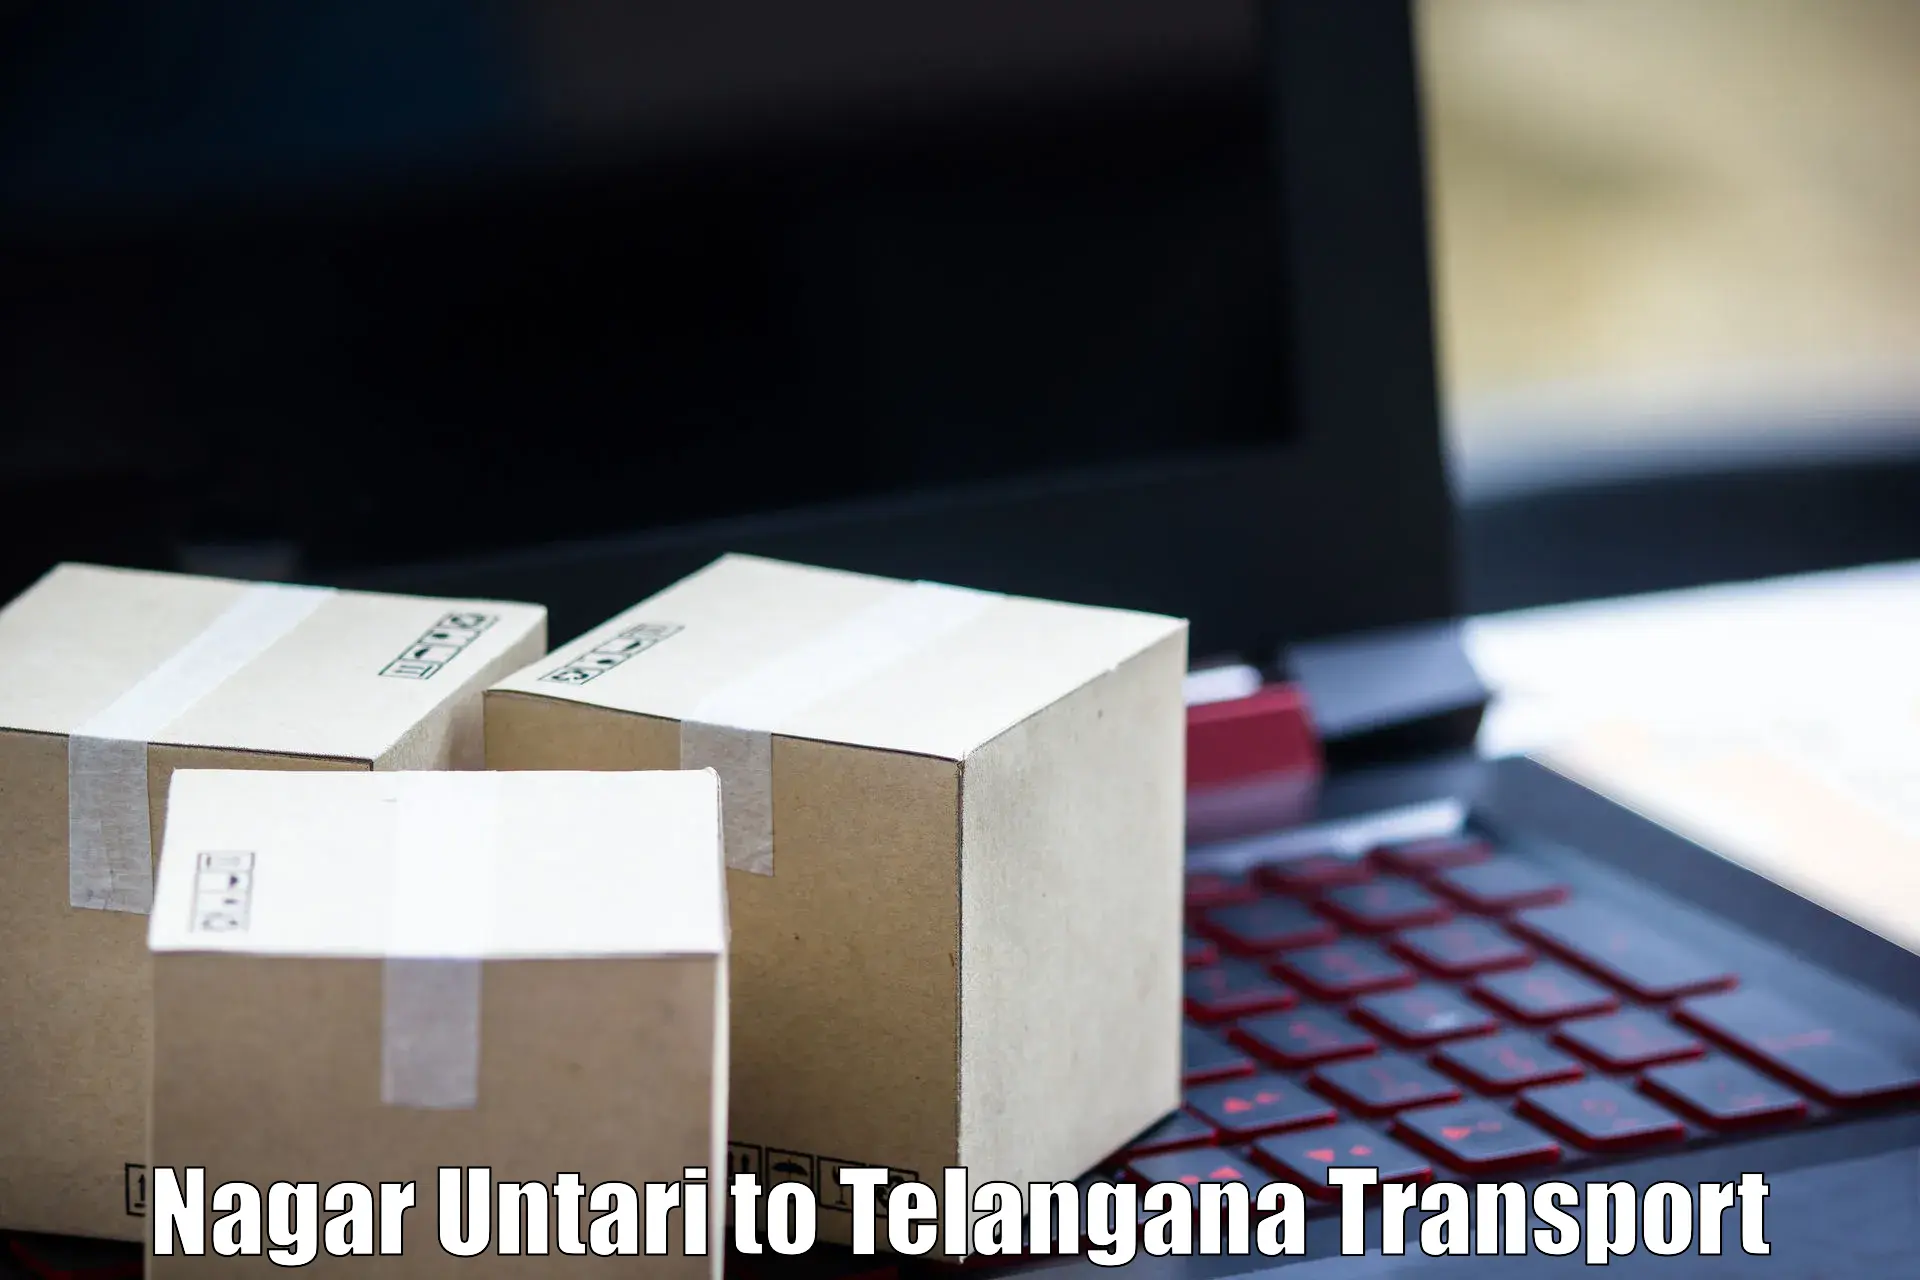 Container transport service Nagar Untari to Marikal